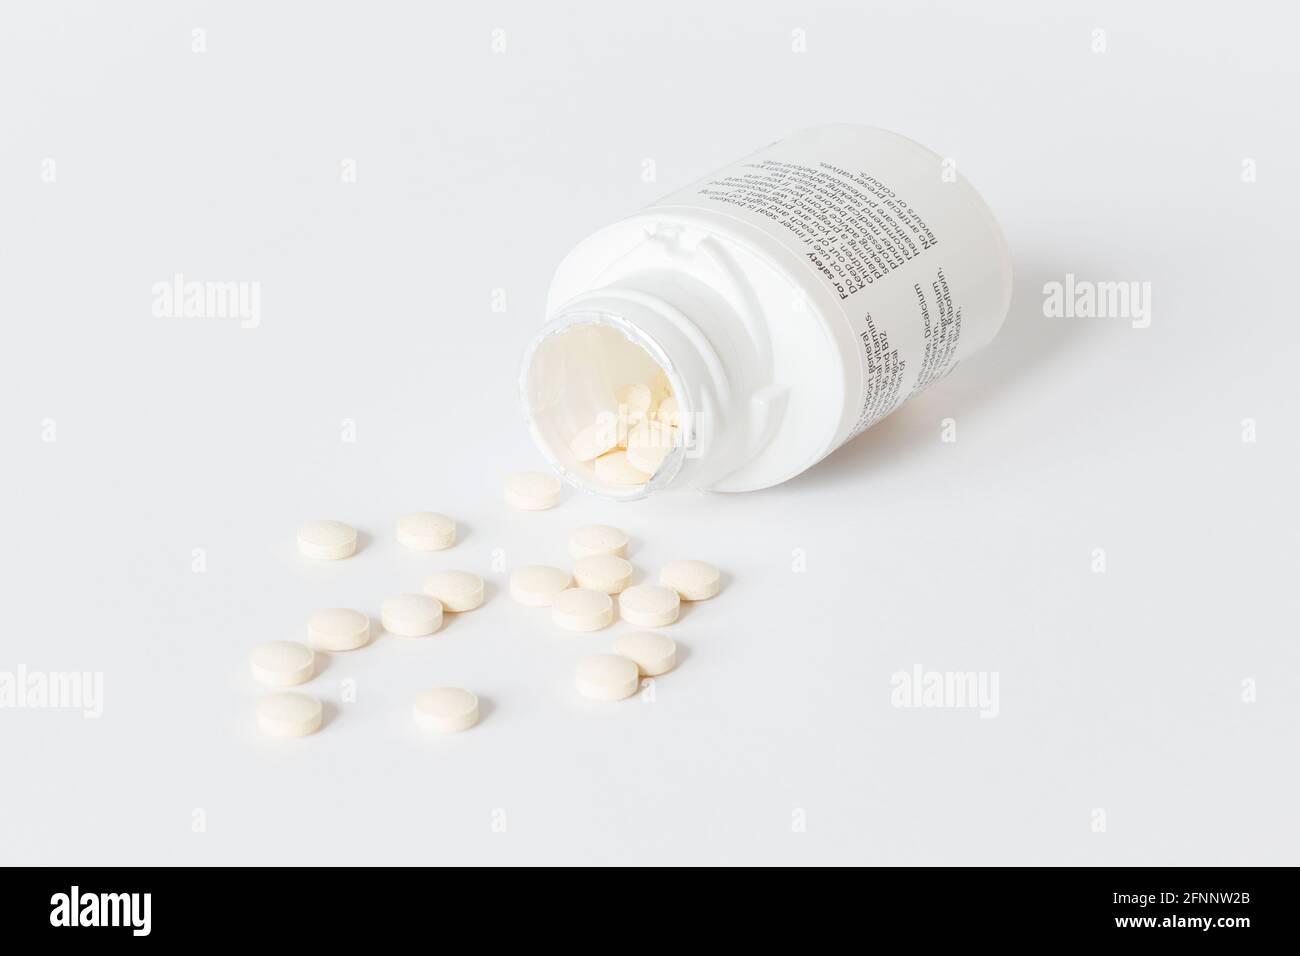 Des comprimés de vitamine débordent d'un récipient en plastique ouvert sur un arrière-plan blanc Banque D'Images